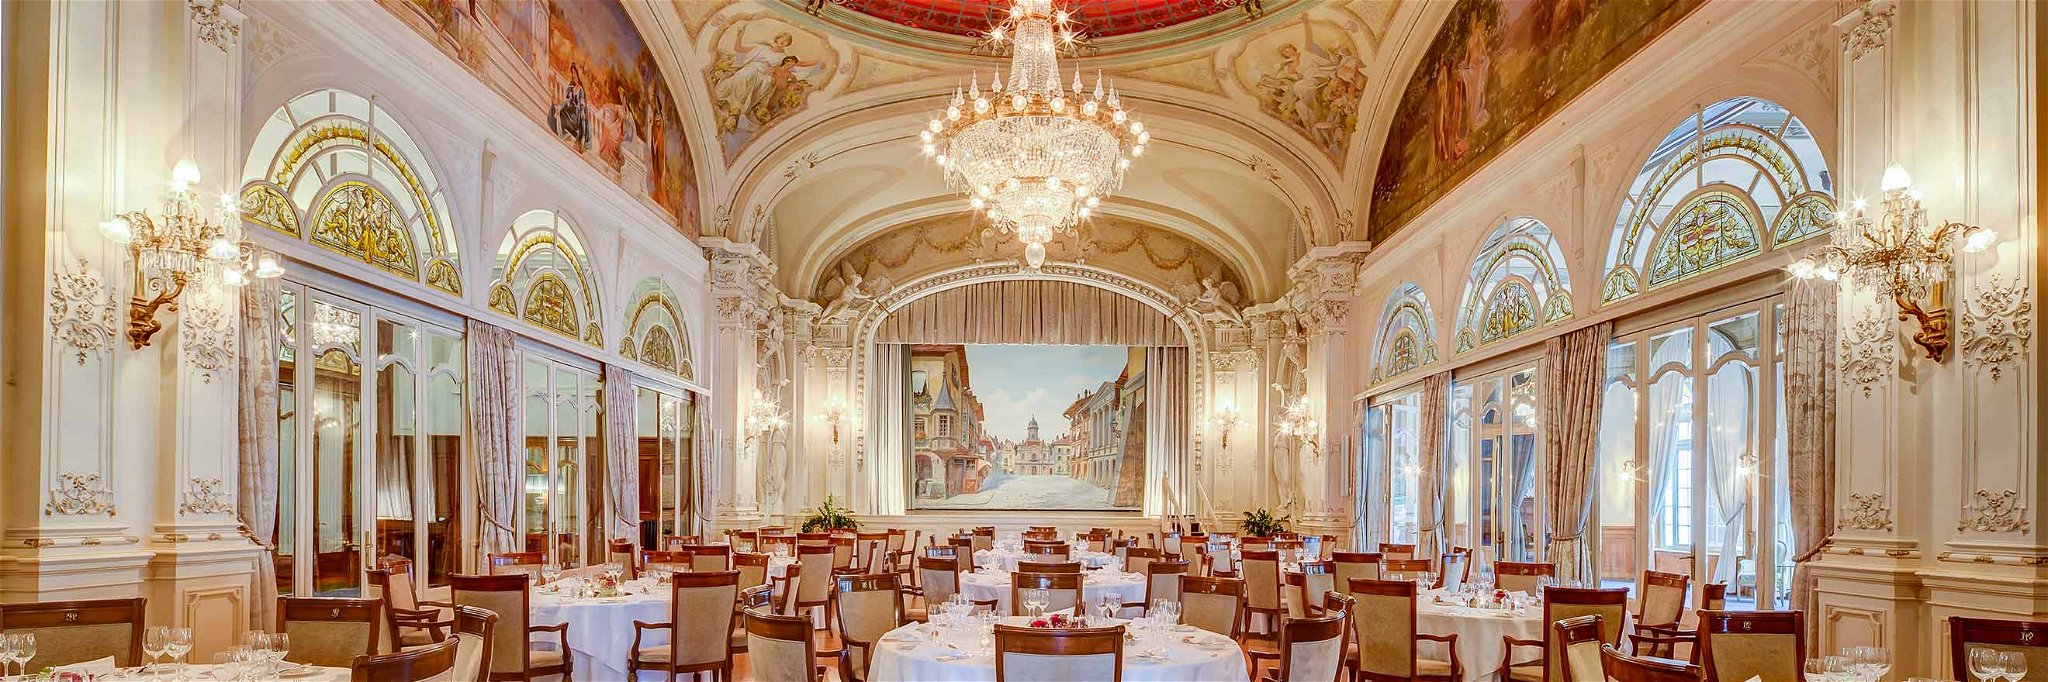 1906 eröffnet und keinen ­Funken Glanz eingebüsst: Das «Fairmont le Montreux Palace» begeistert bis heute mit prunkvollem Interieur und ­erstklassigem Service.